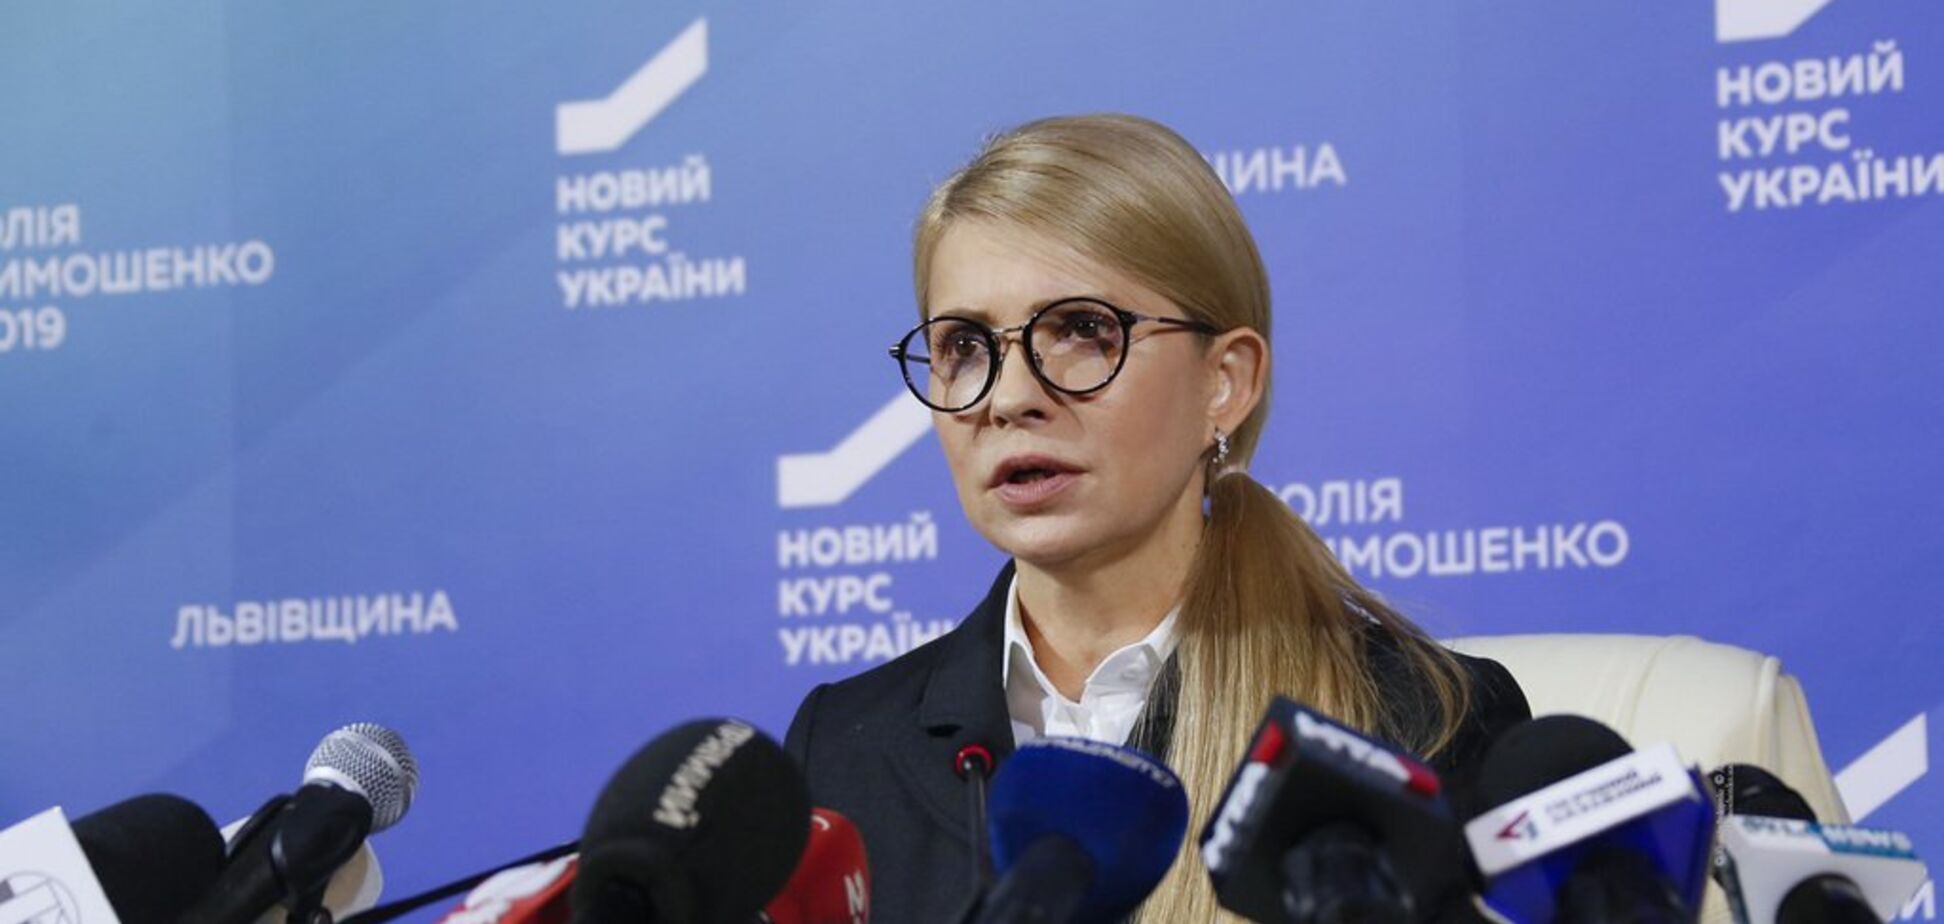 Тимошенко: я повертатиму довіру людей до влади своєю роботою